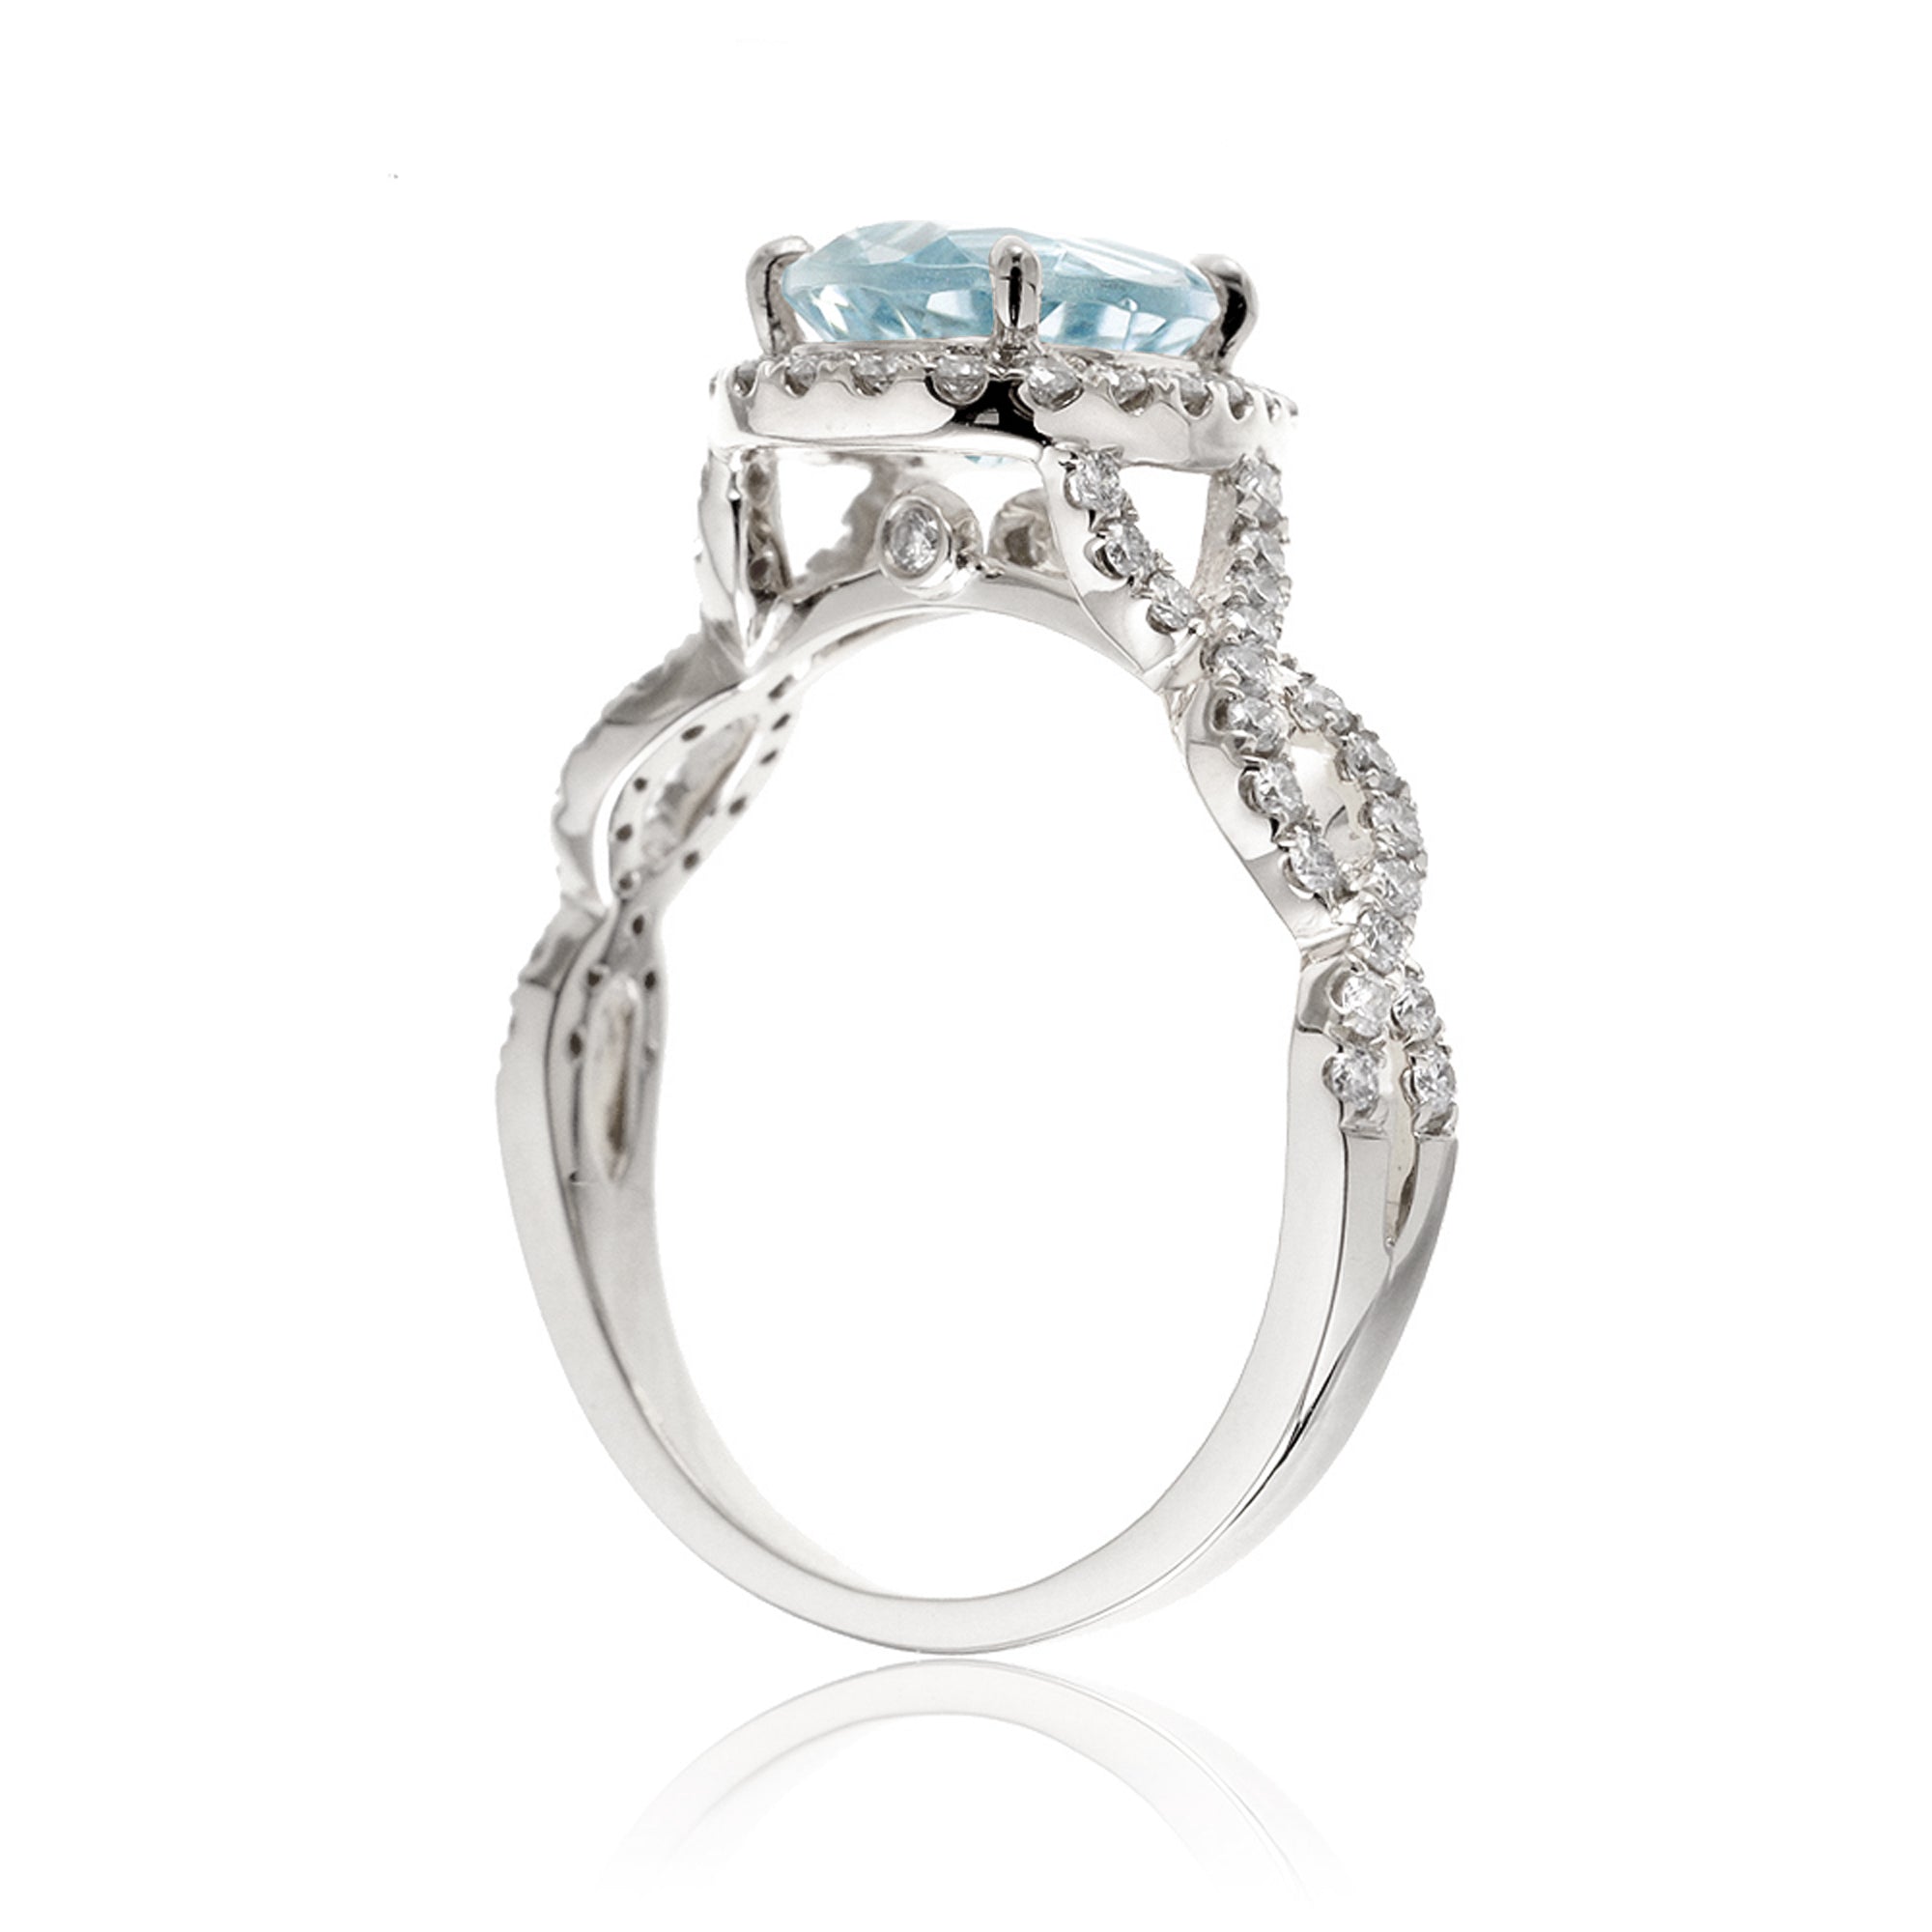 Pear aquamarine gemstone ring diamond halo twisted band white gold